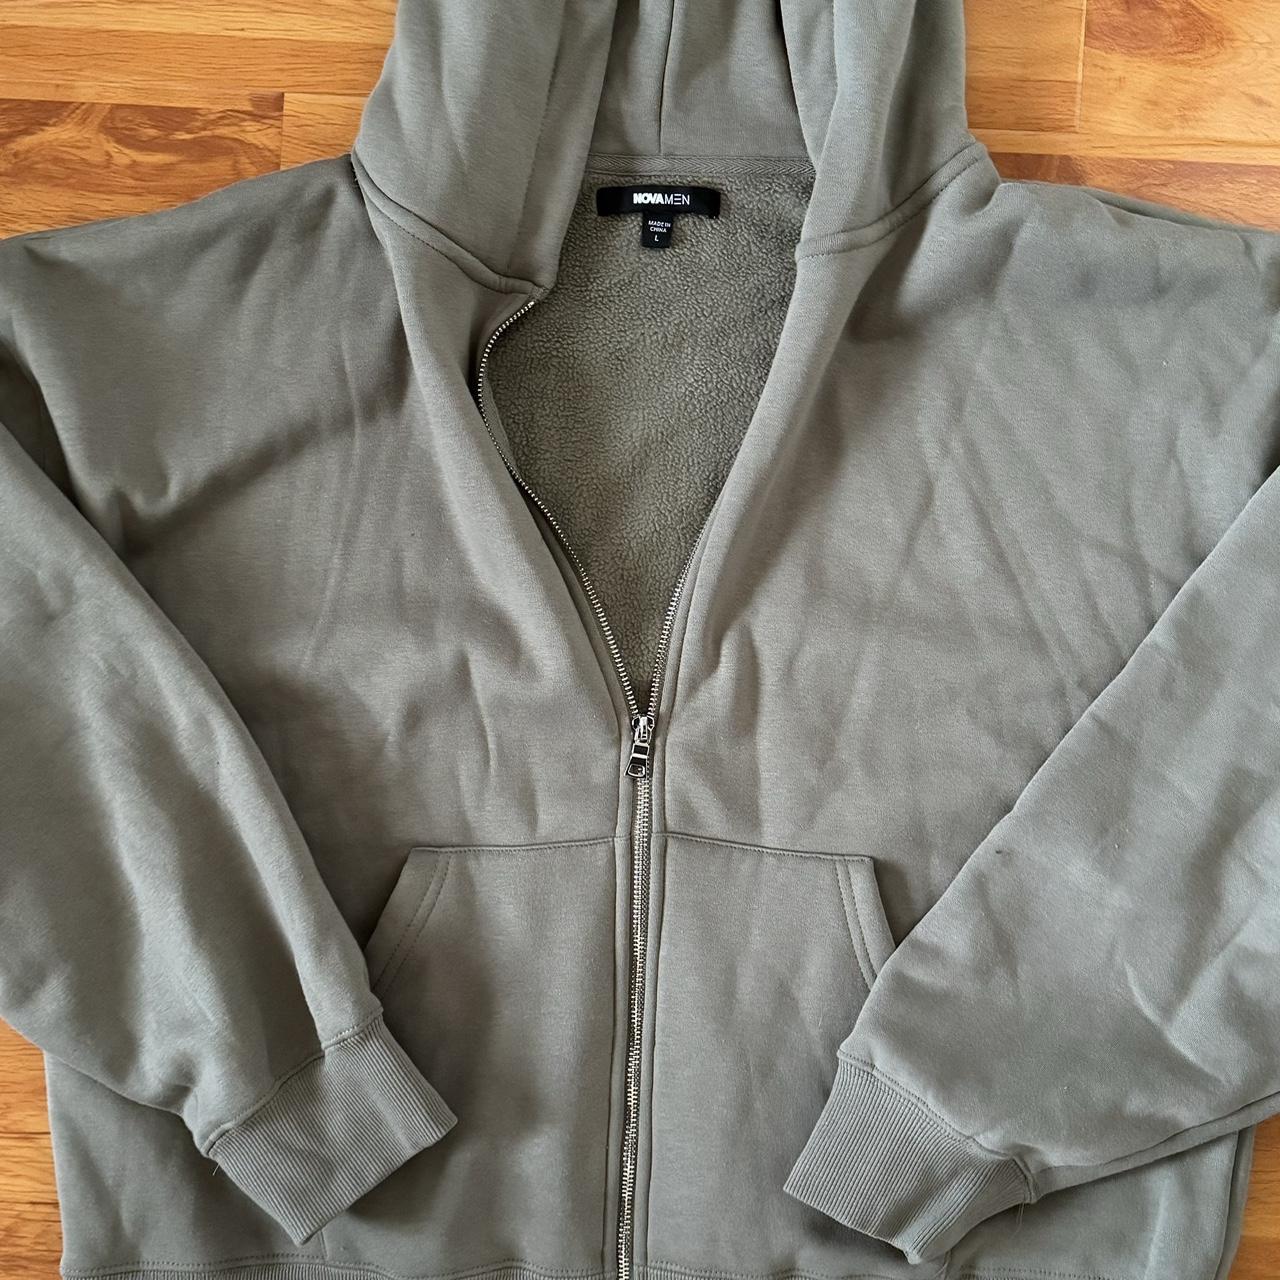 Olive zip up jacket NovaMen - Depop